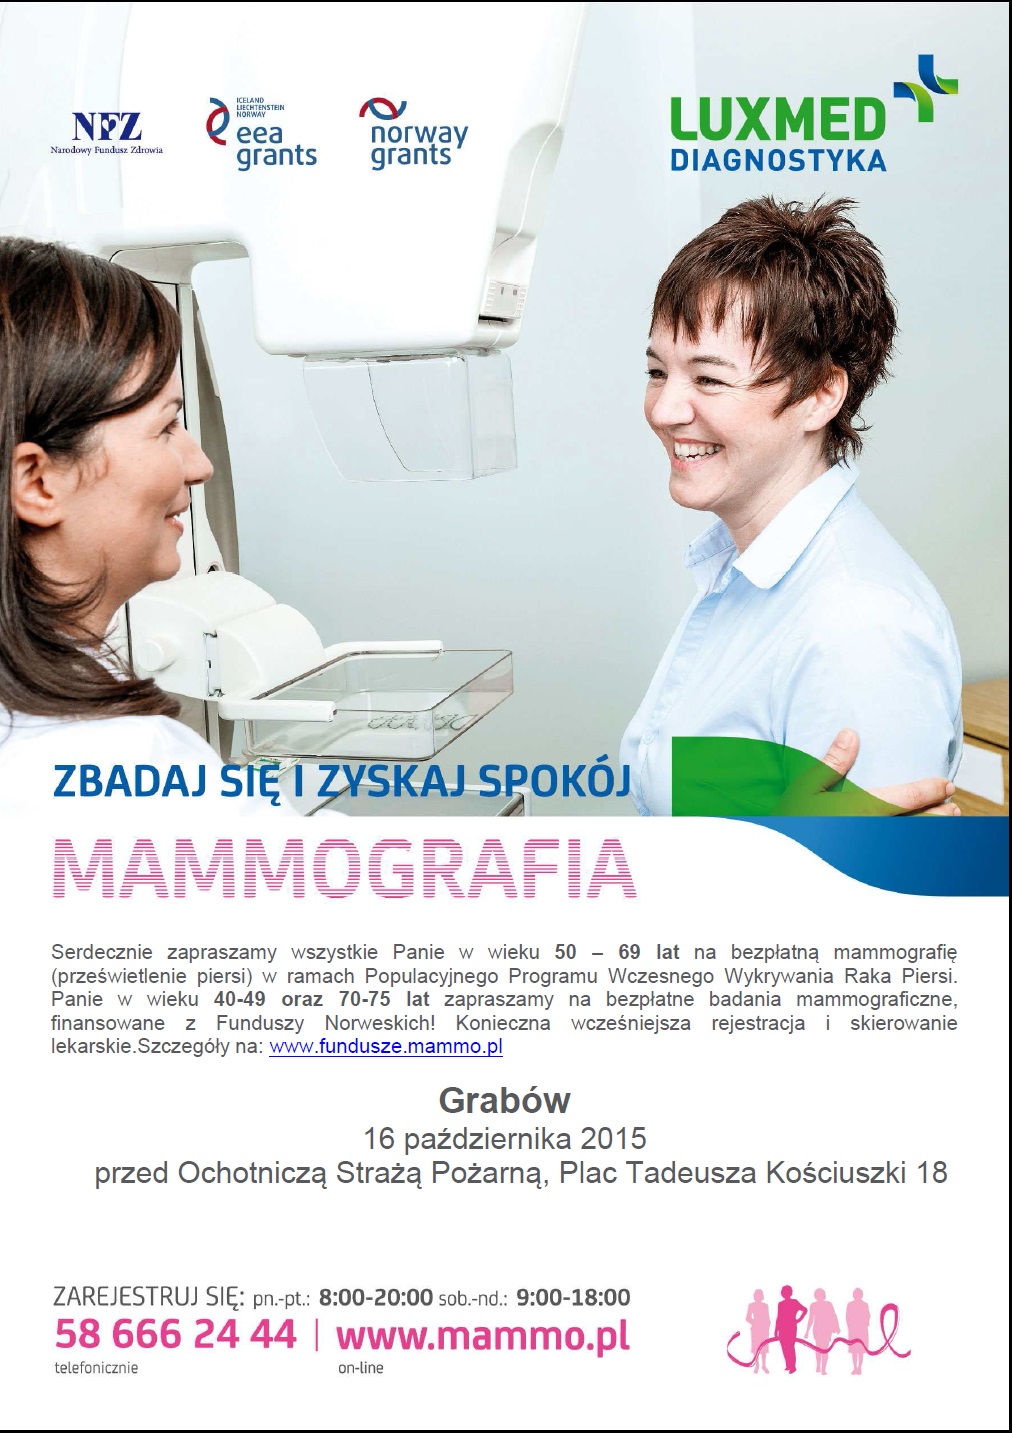  Bezpłatna mammografia dla pań 40-75 lat - Zdjęcie główne